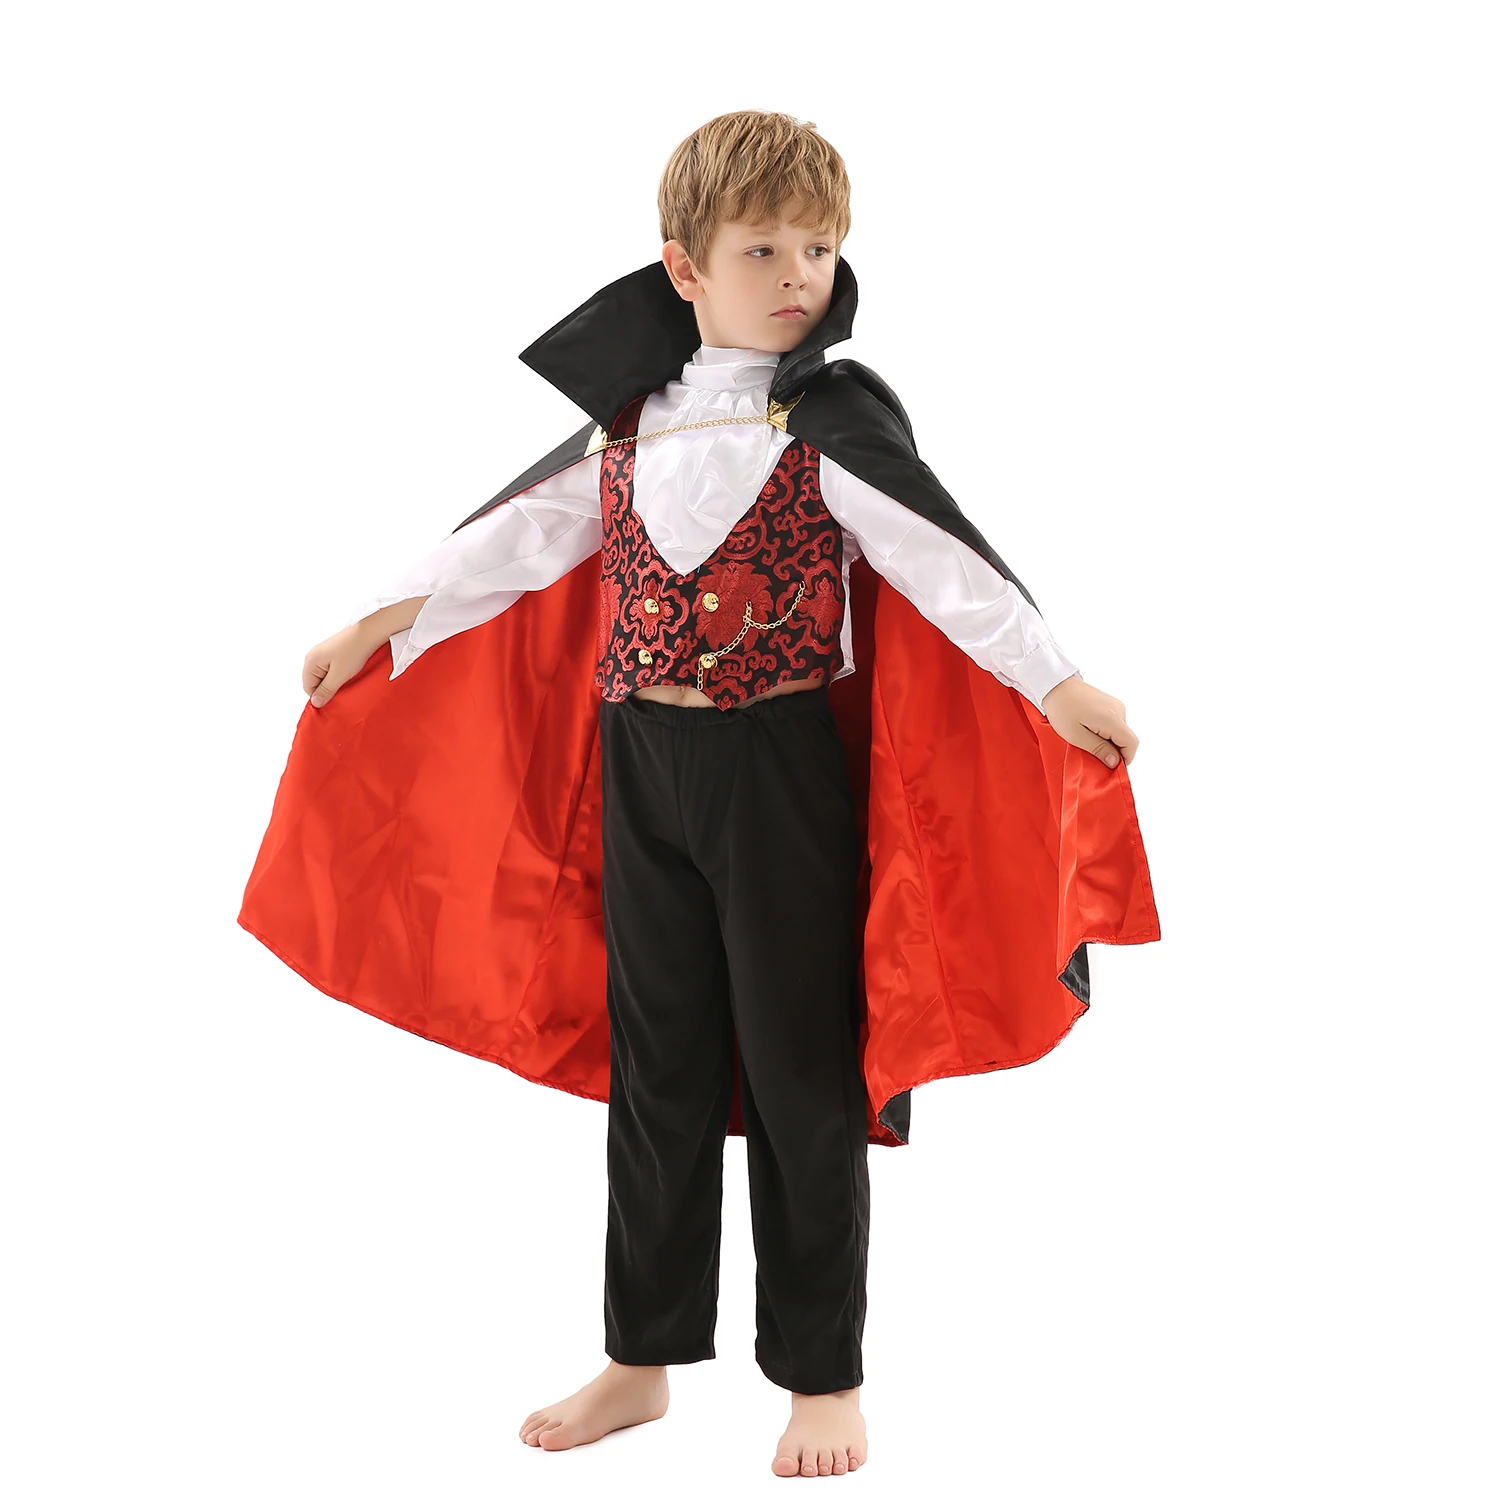 Gevoelig voor Luik hoofdstuk Kids Halloween Costume Boy Royal Gothic Vampire Costumes - Buy Vampire  Costumes,Halloween Costumes,Kids Costume Product on Alibaba.com